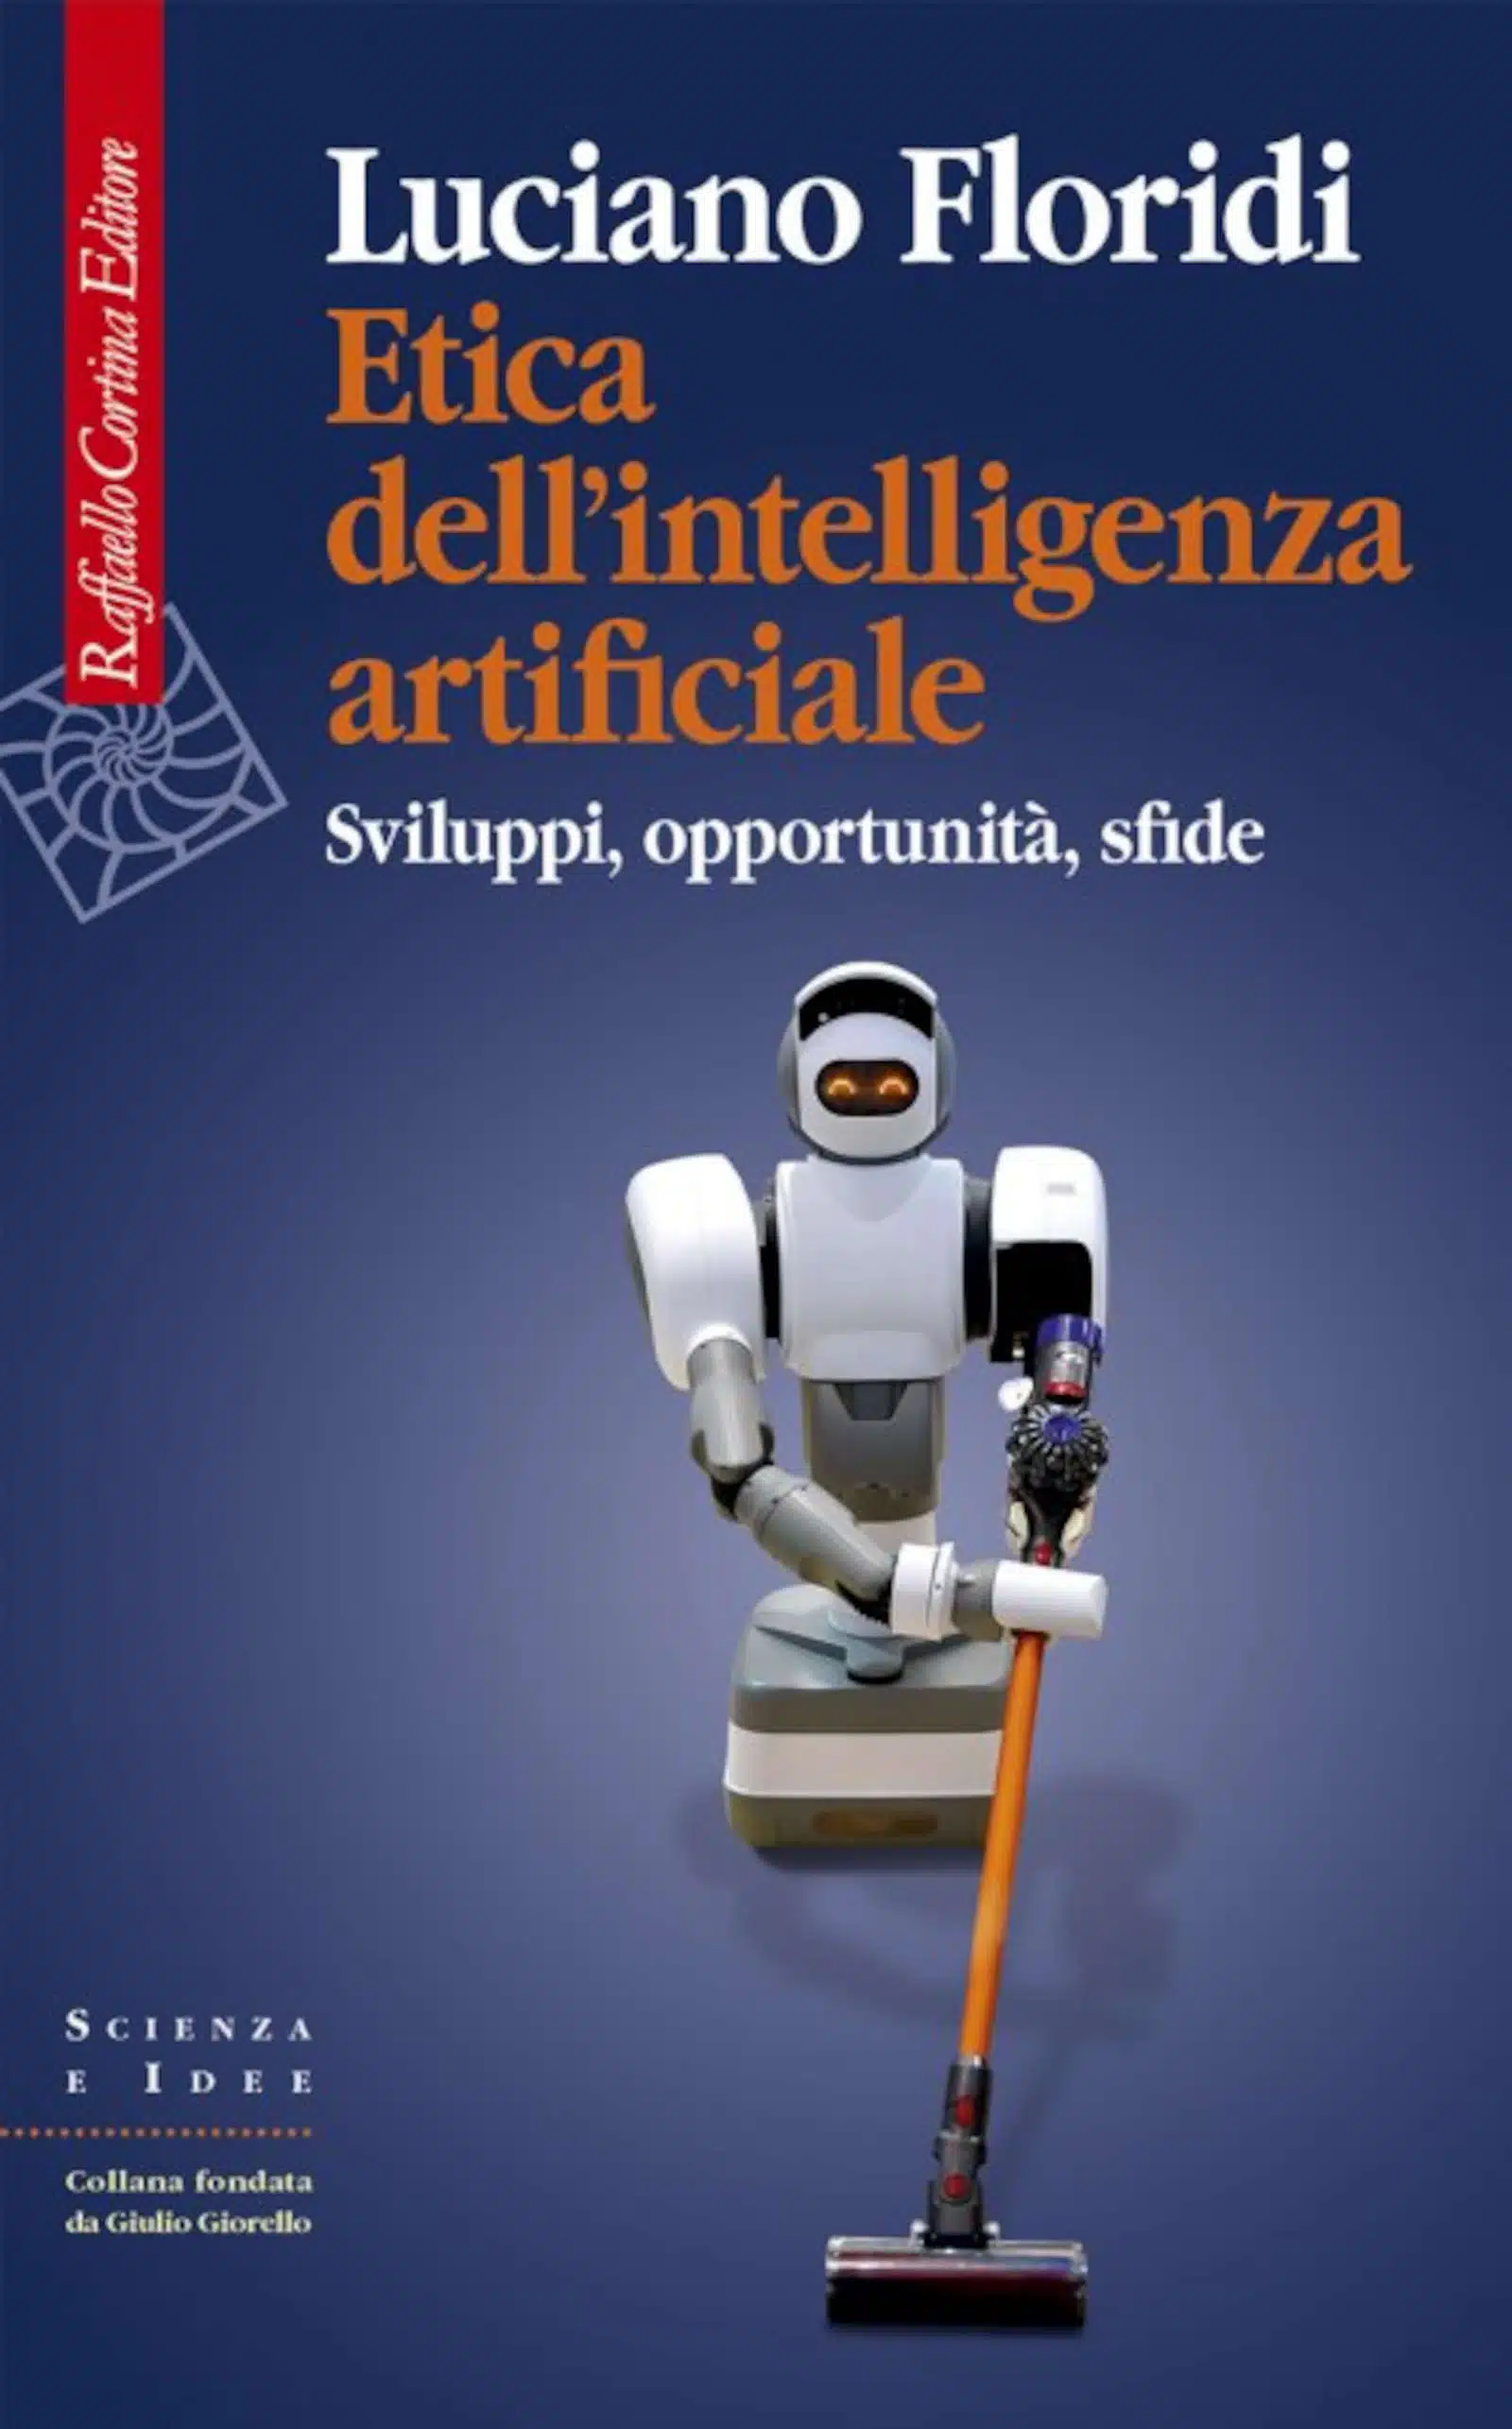 Etica dell'intelligenza artificiale (2022) di L. Floridi - Recensione Featured